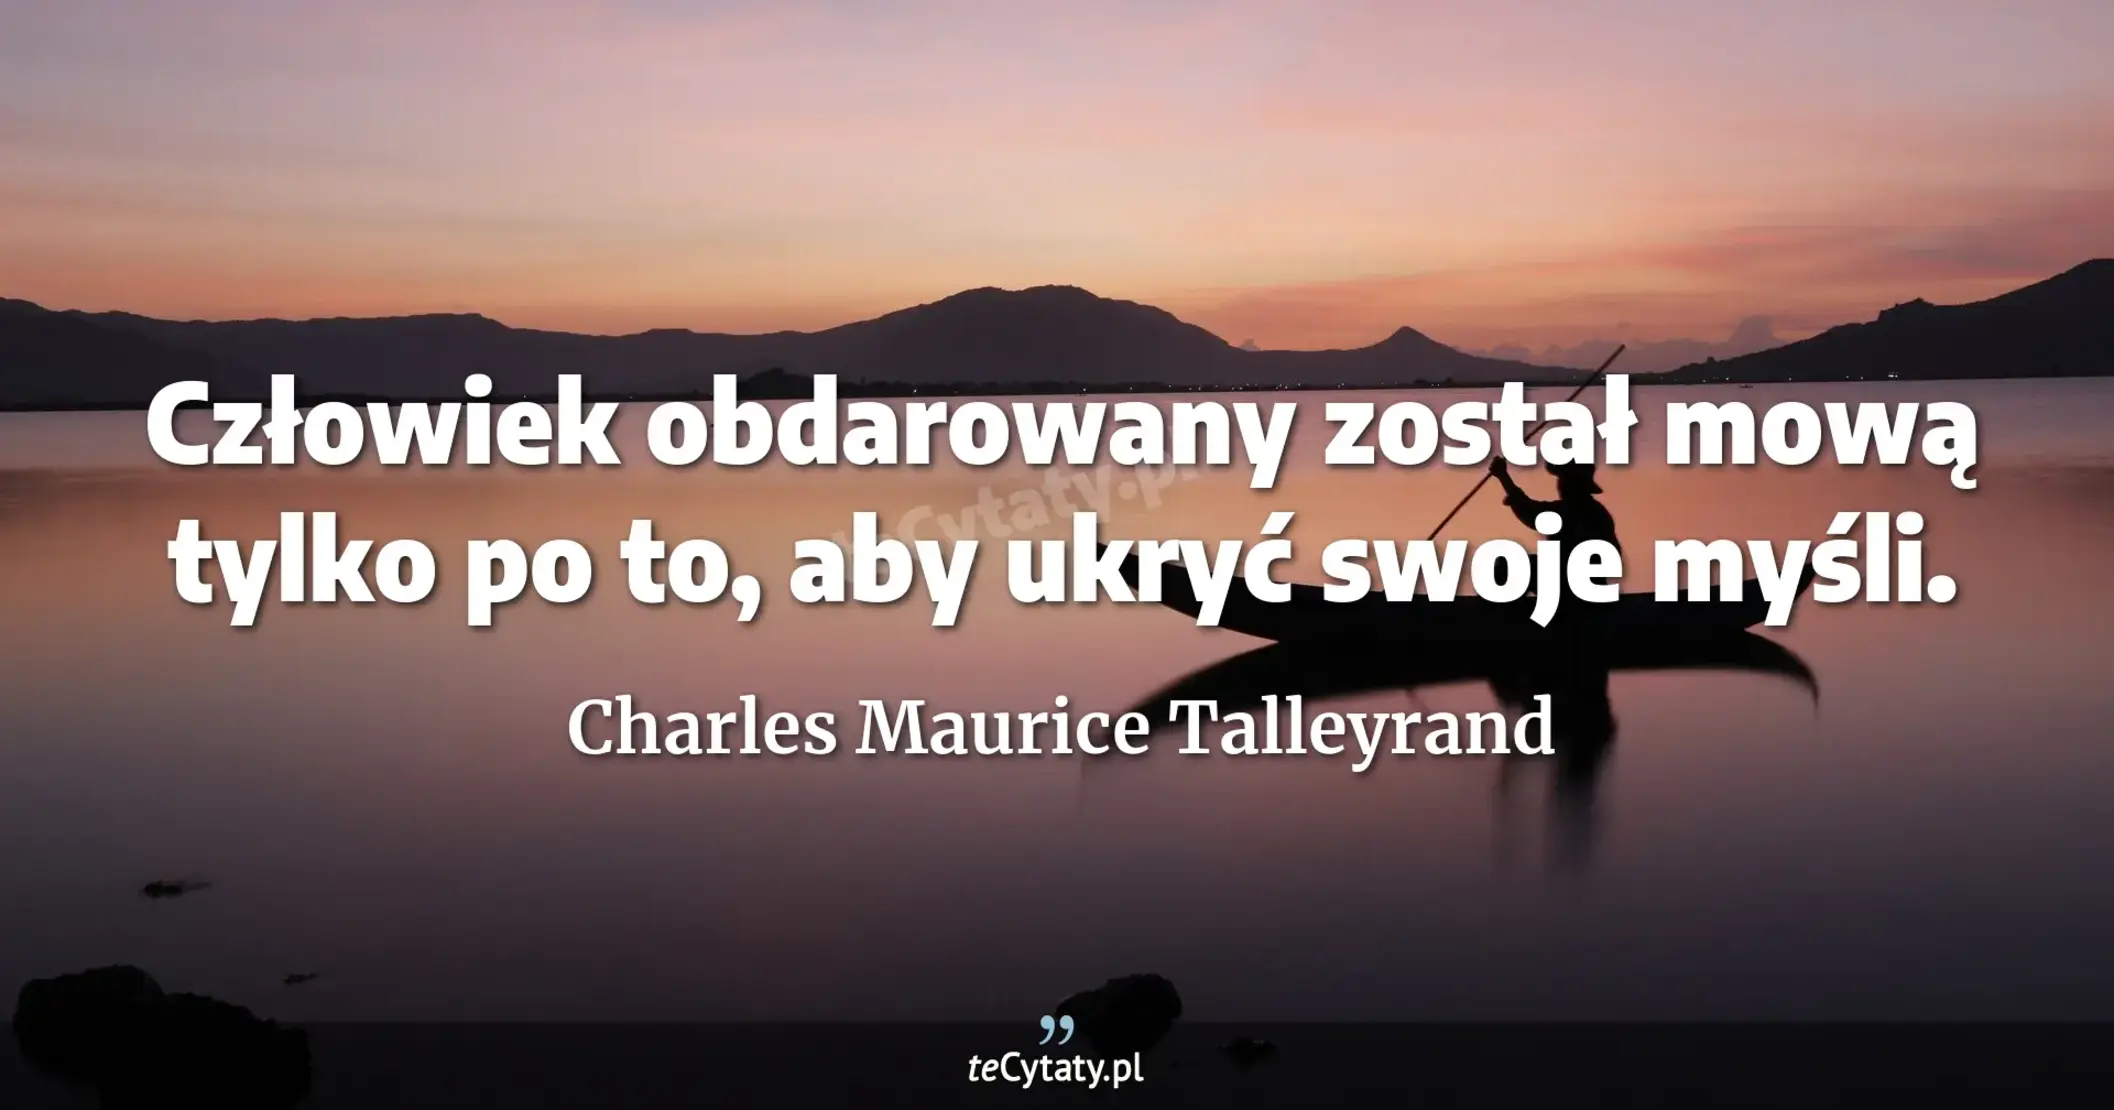 Człowiek obdarowany został mową tylko po to, aby ukryć swoje myśli. - Charles Maurice Talleyrand